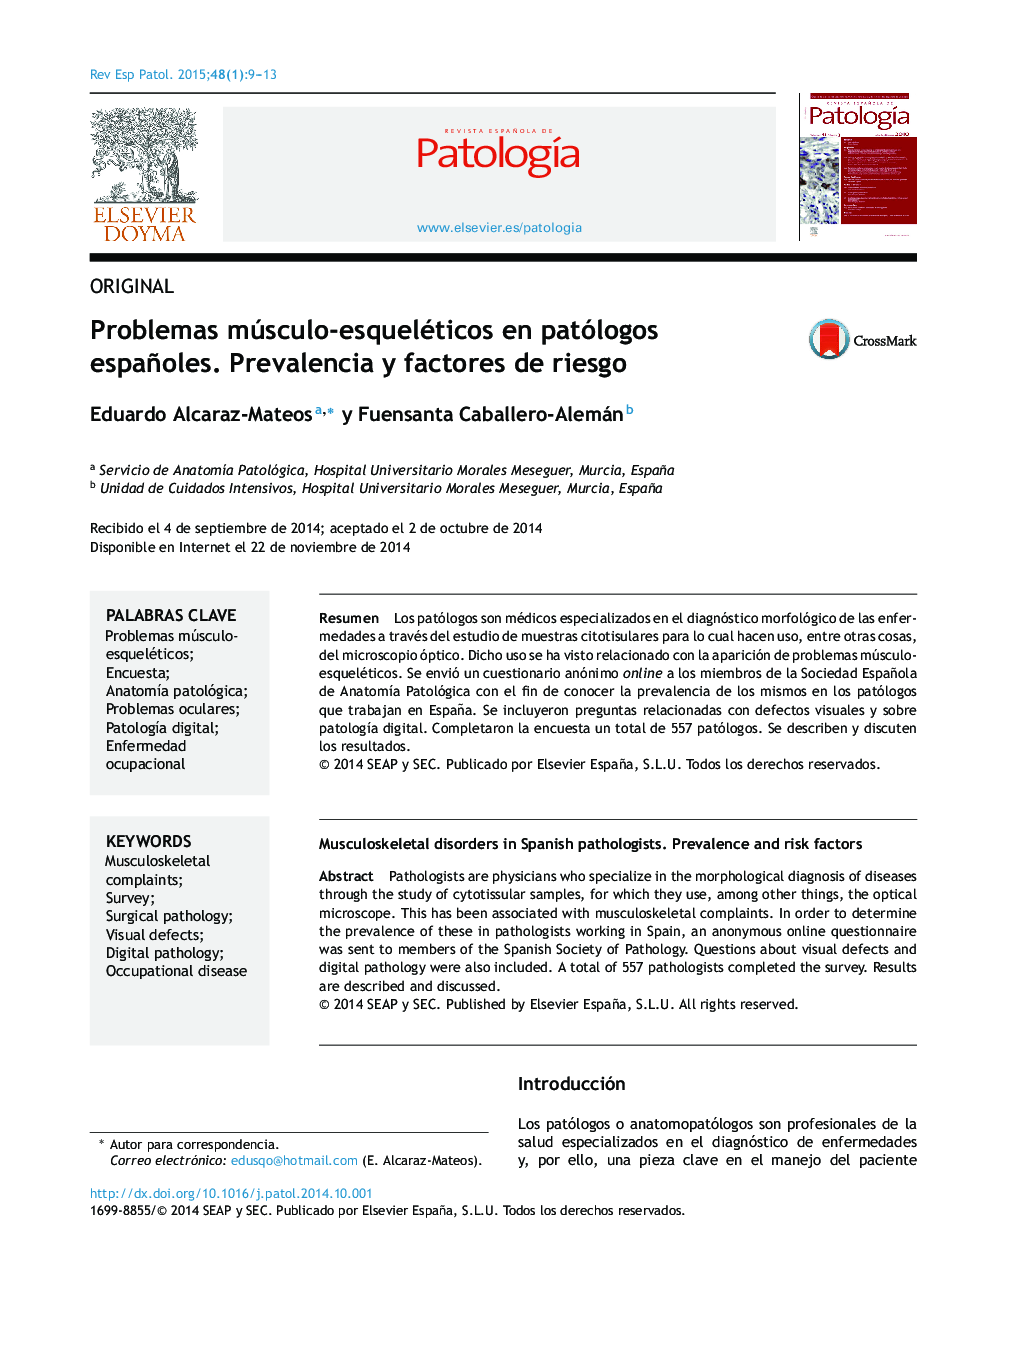 Problemas músculo-esqueléticos en patólogos españoles. Prevalencia y factores de riesgo